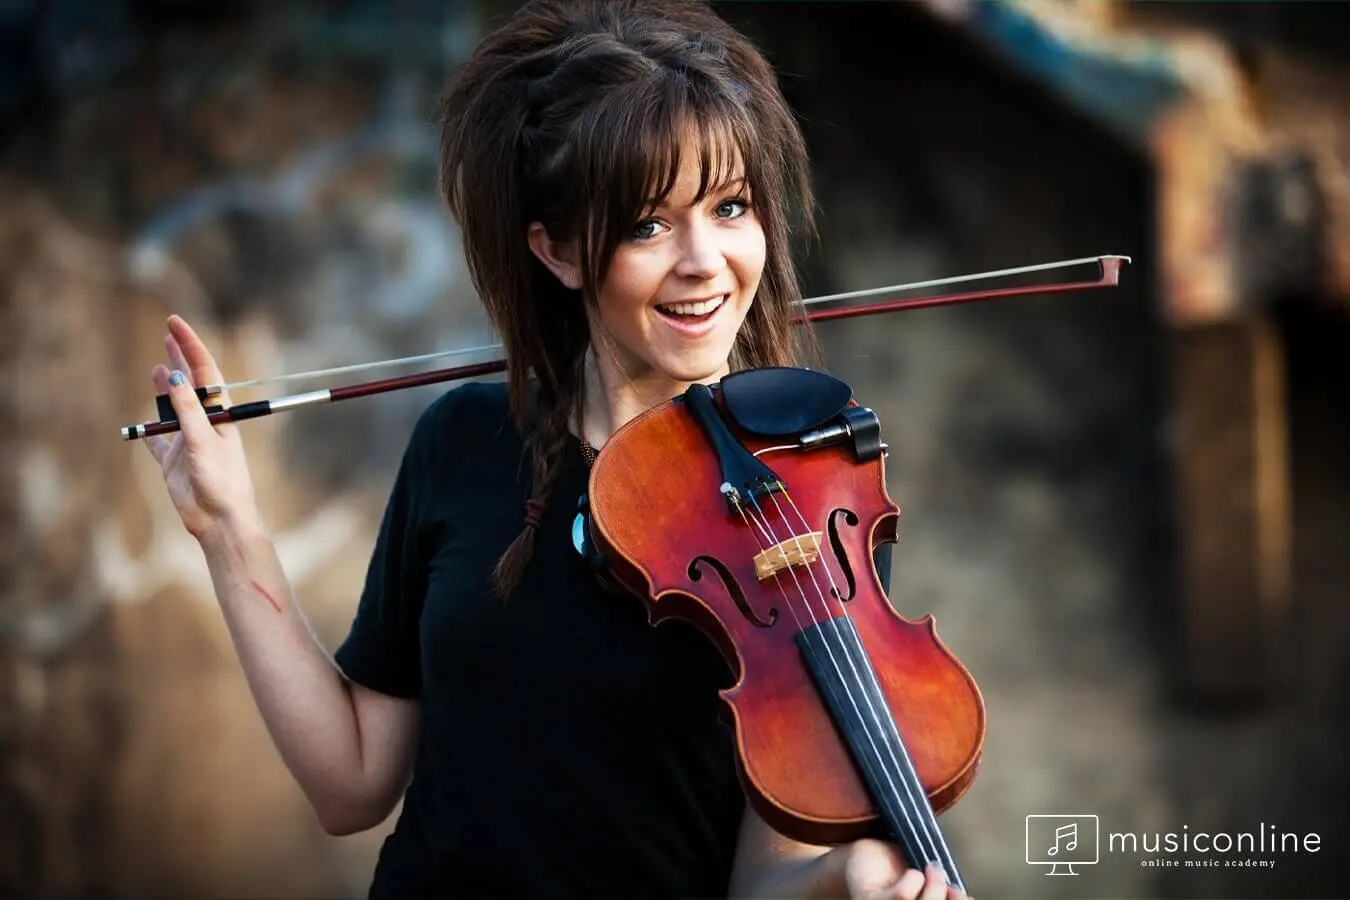 violinista lindsey stirling en argentina - Que estudió Lindsey Stirling